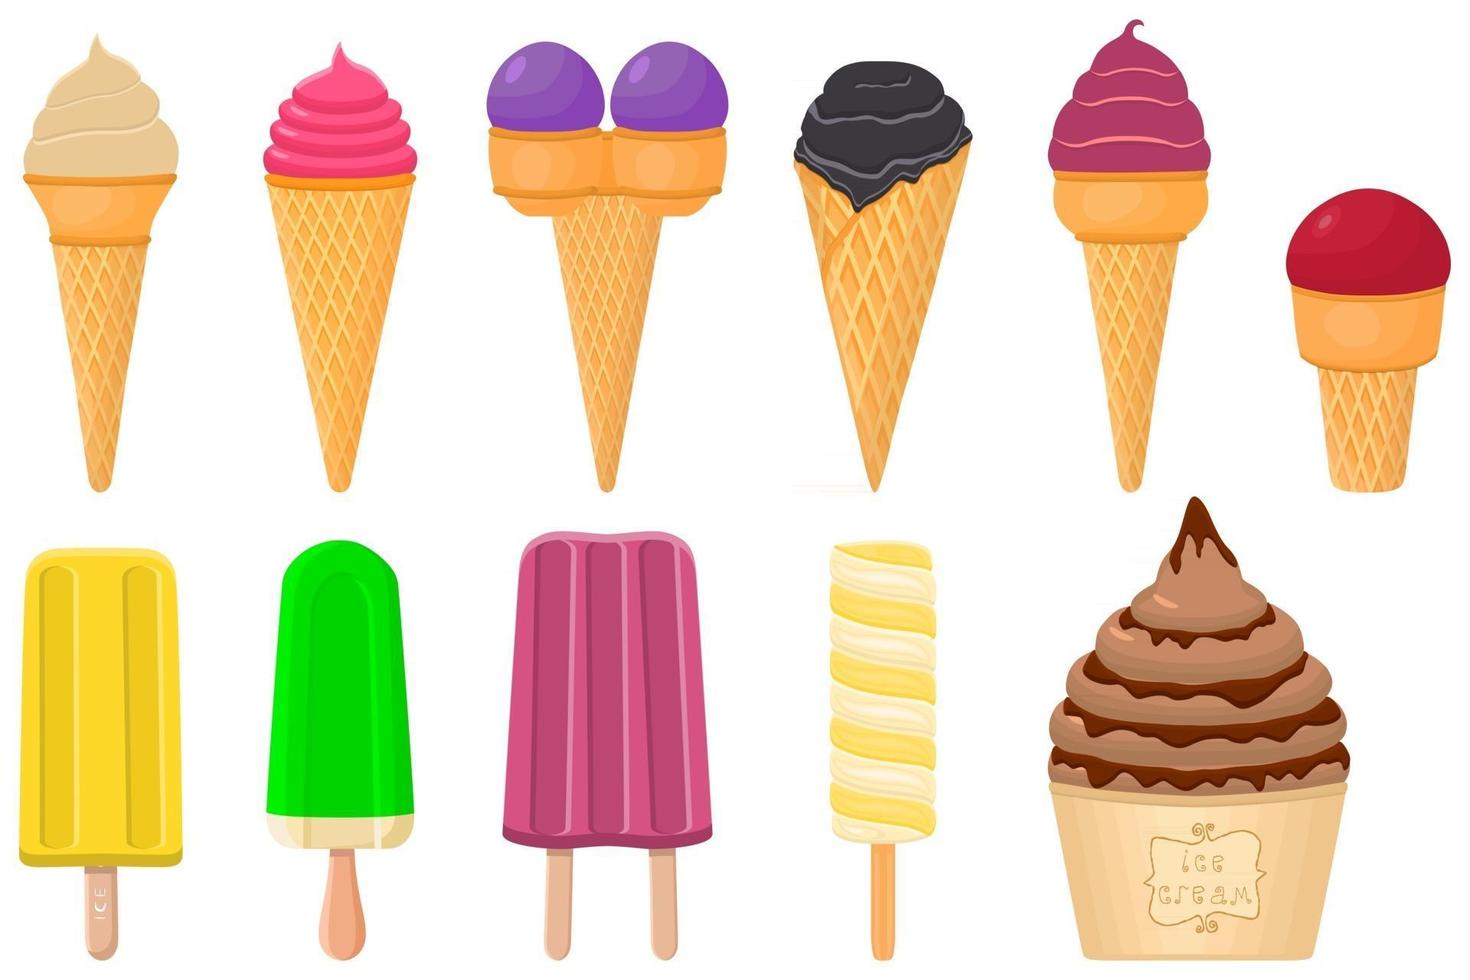 gran kit de paletas de helado de diferentes tipos en taza de gofres de cono vector